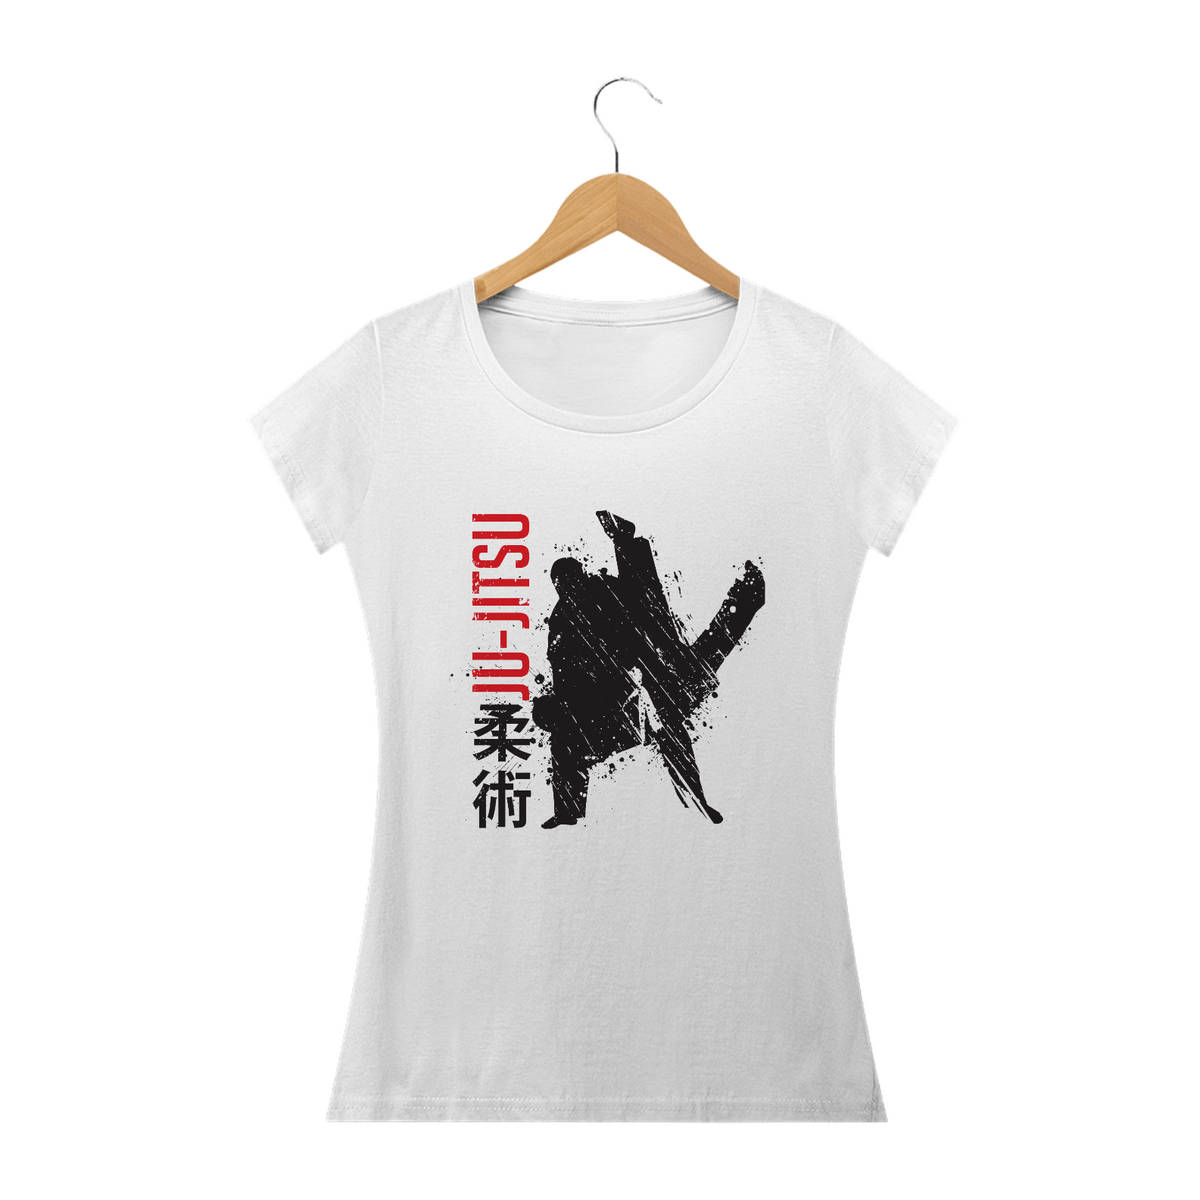 Nome do produto: Jiu-jitsu - Camisa Jiu-jitsu